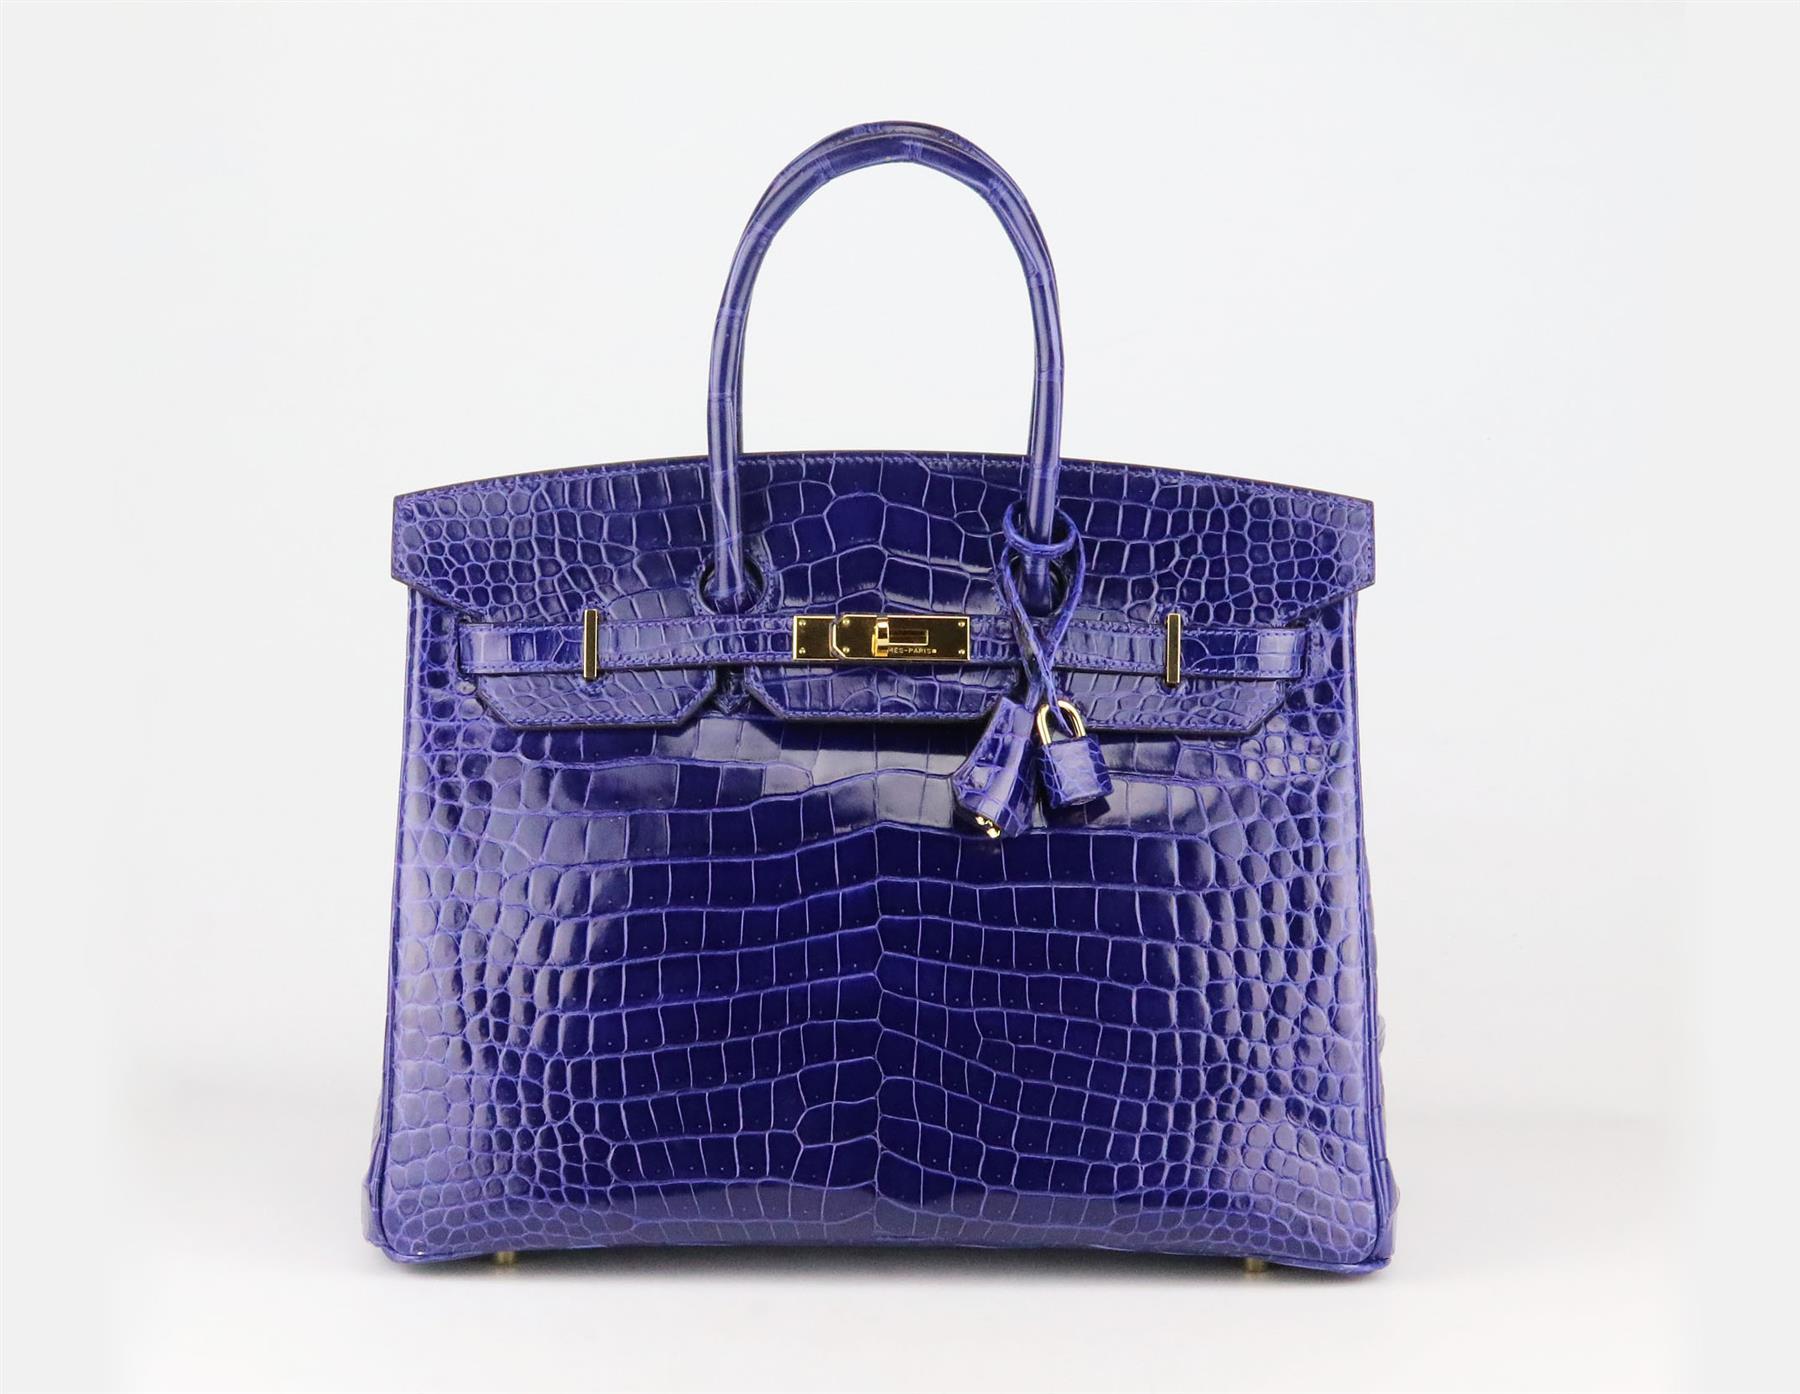 <ul>
<li>Fabriqué en France, ce magnifique sac à main Hermès 'Birkin' 35cm 2014 a été réalisé en crocodile Porosus brillant en 'Royal Blue' et intérieur en cuir assorti, cette pièce est décorée d'une quincaillerie dorée sur le devant et se termine